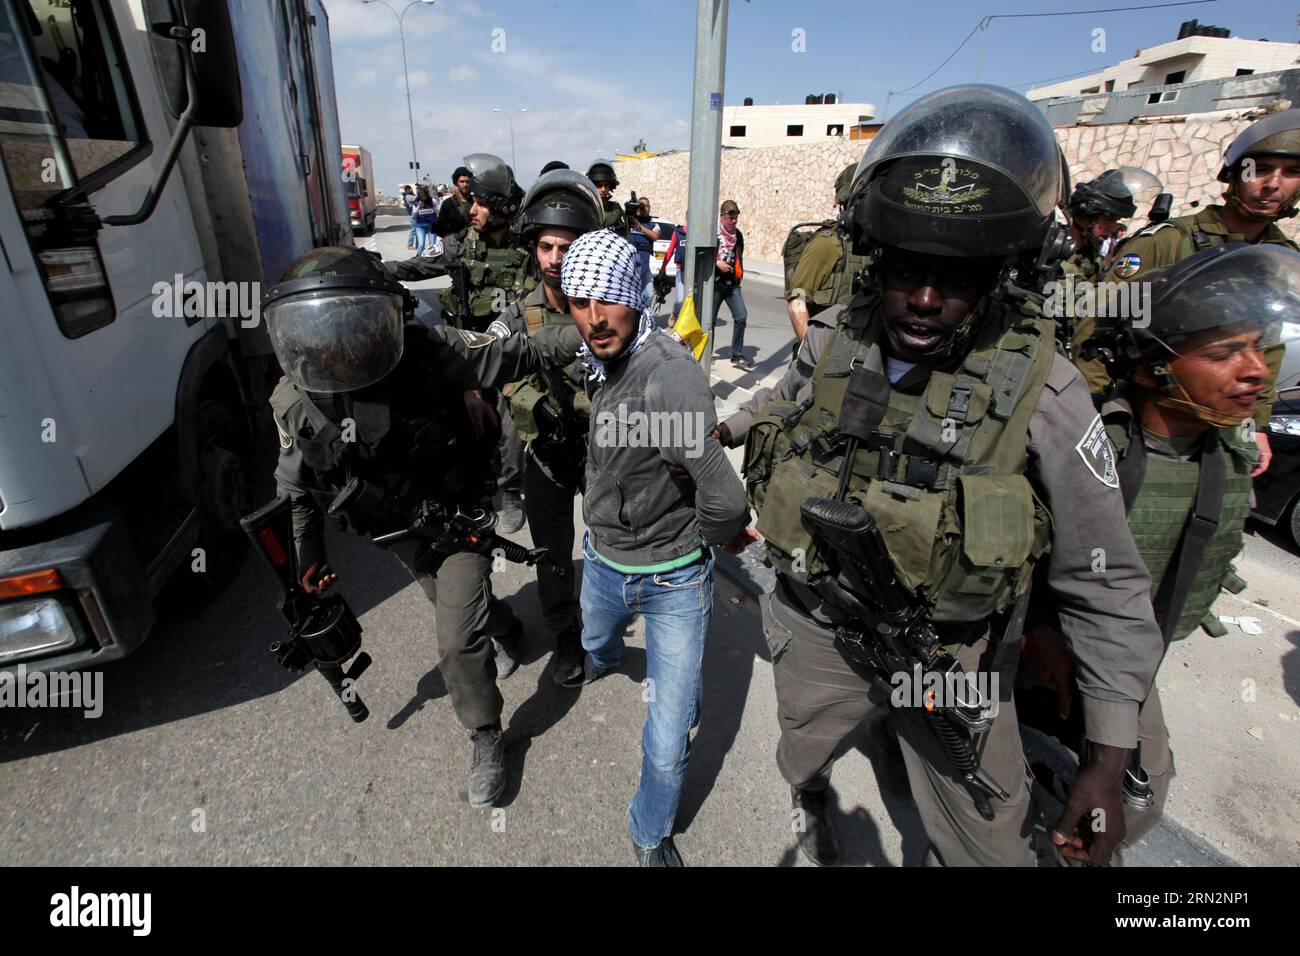 Des soldats israéliens arrêtent un manifestant palestinien lors d’une manifestation contre ce que les Palestiniens disent être des confiscations de terres par Israël pour des colonies juives, près de la ville de Cisjordanie d’Abu dis près de Bethléem, le 17 mars 2015. )(lyi) MIDEAST-BETHLEHEM-PROTEST LuayxSababa PUBLICATIONxNOTxINxCHN soldats israéliens un PALESTINIEN lors d'une manifestation contre ce que LES PALESTINIENS disent EST pays par Israël pour les colonies juives près de la ville de CISJORDANIE d'Abu DIS près de Bethléem LE 17 2015 mars lyi Mideast Bethlehem Protest LuayxSababa PUBLICATIONxNOTxINxCHN Banque D'Images